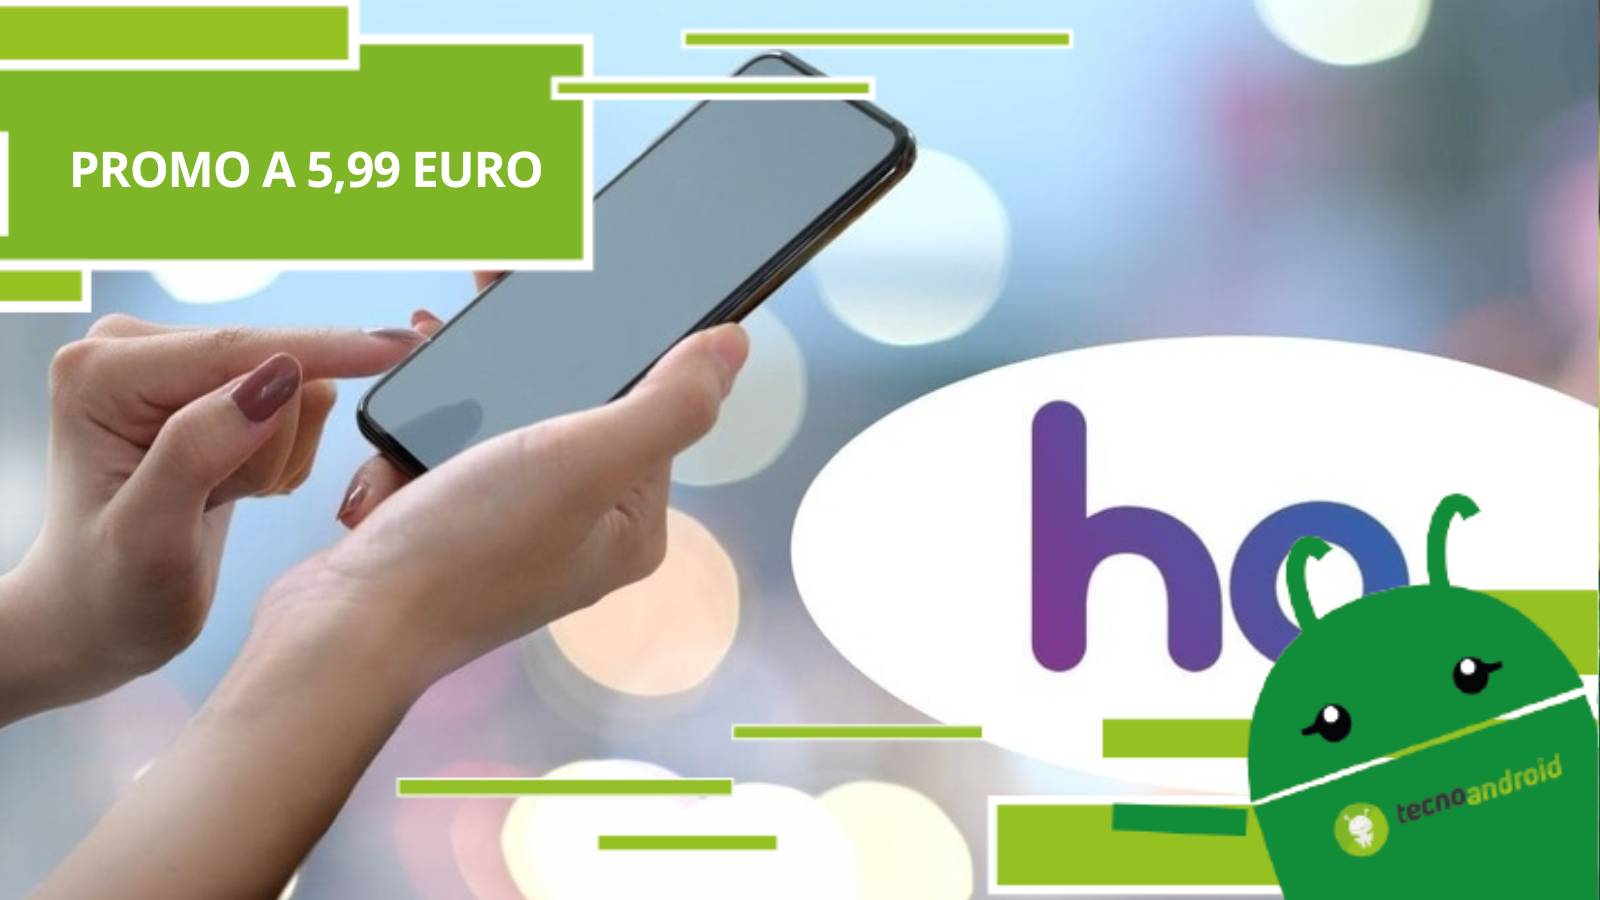 ho. mobile, ad agosto la compagnia offre una promo pazzesca a meno di 6 euro